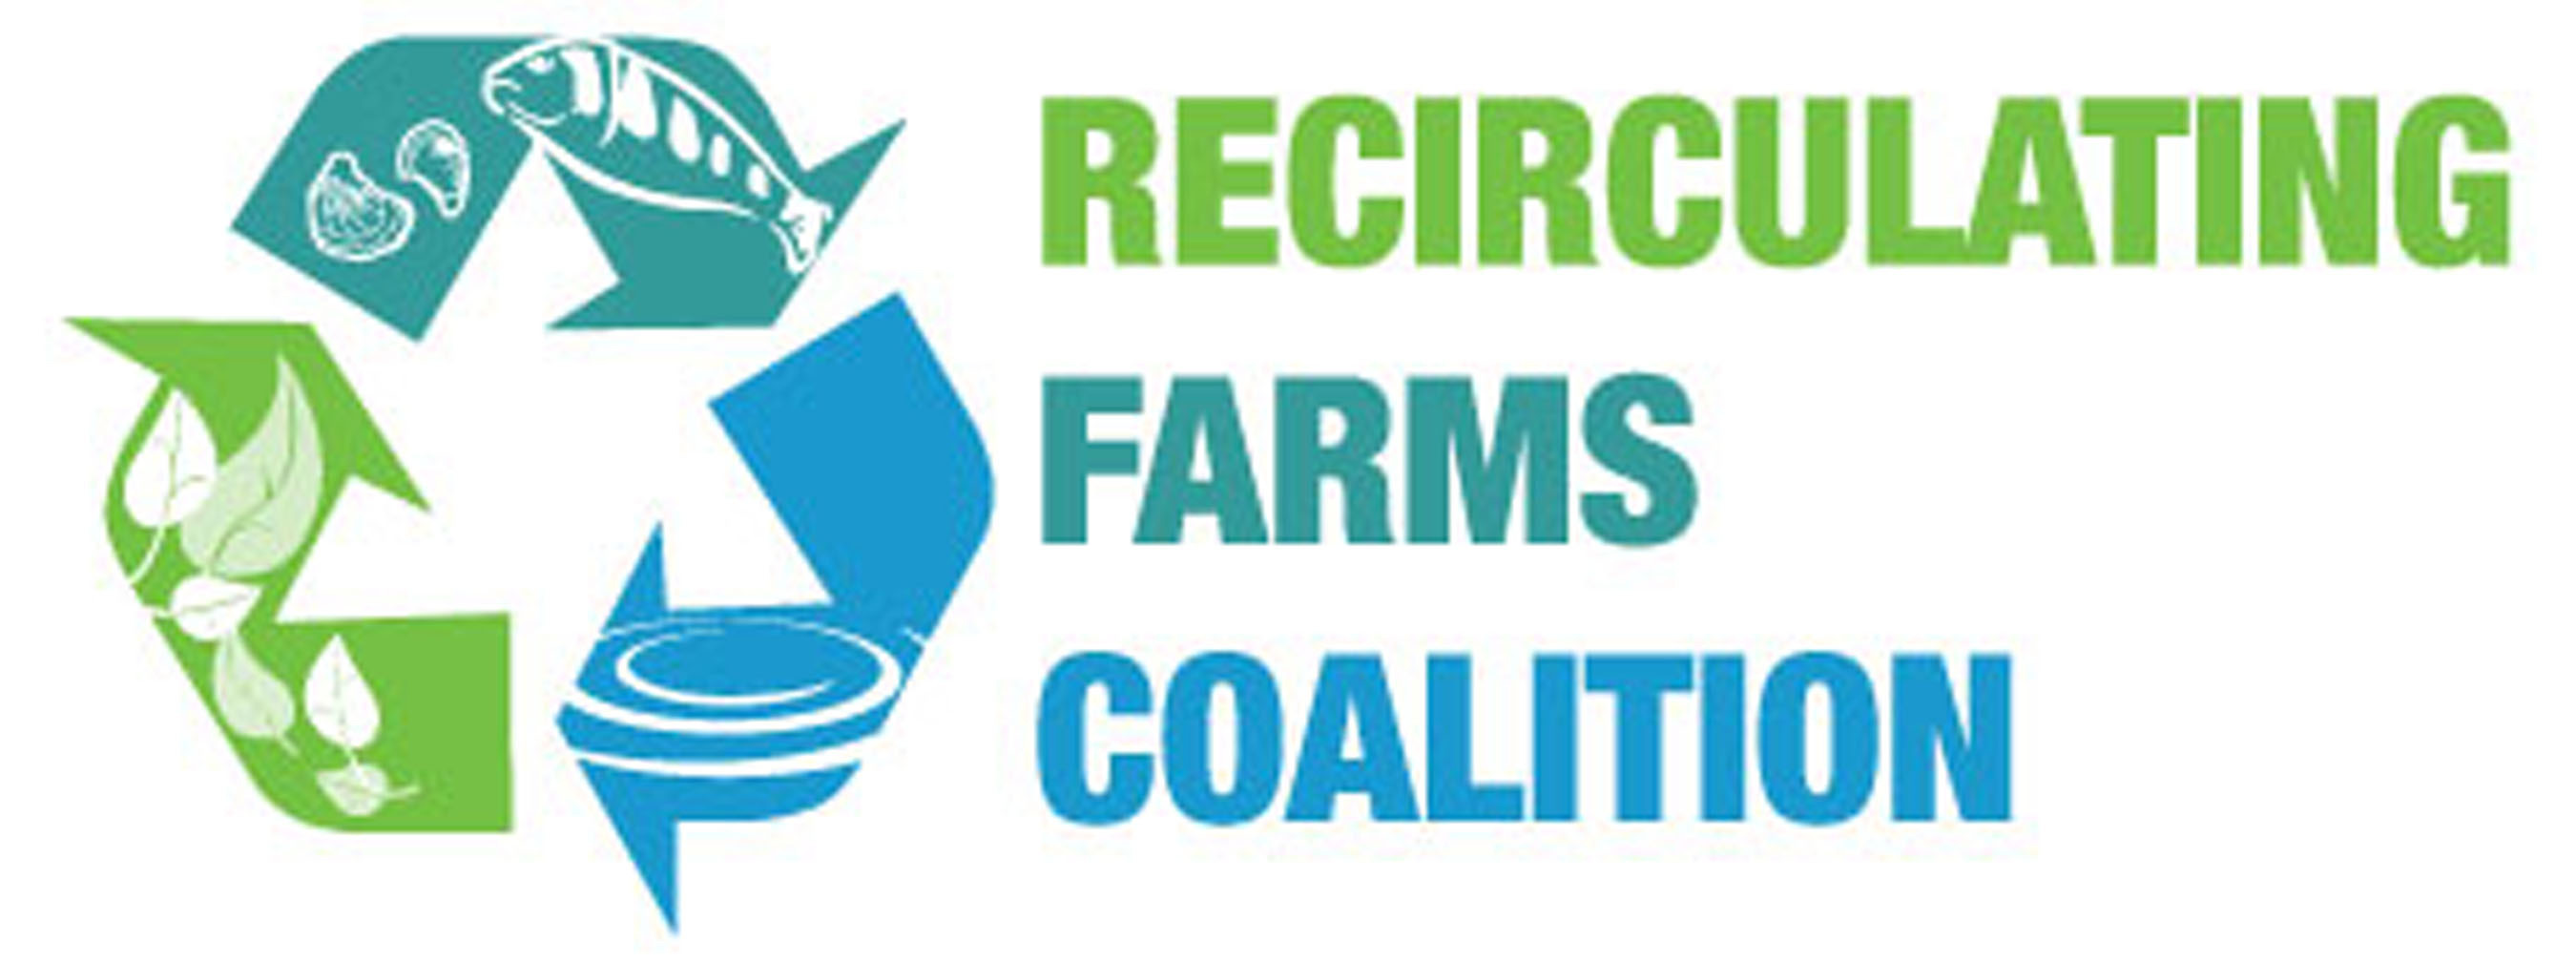 Recirculating Farms Coalition Logo.